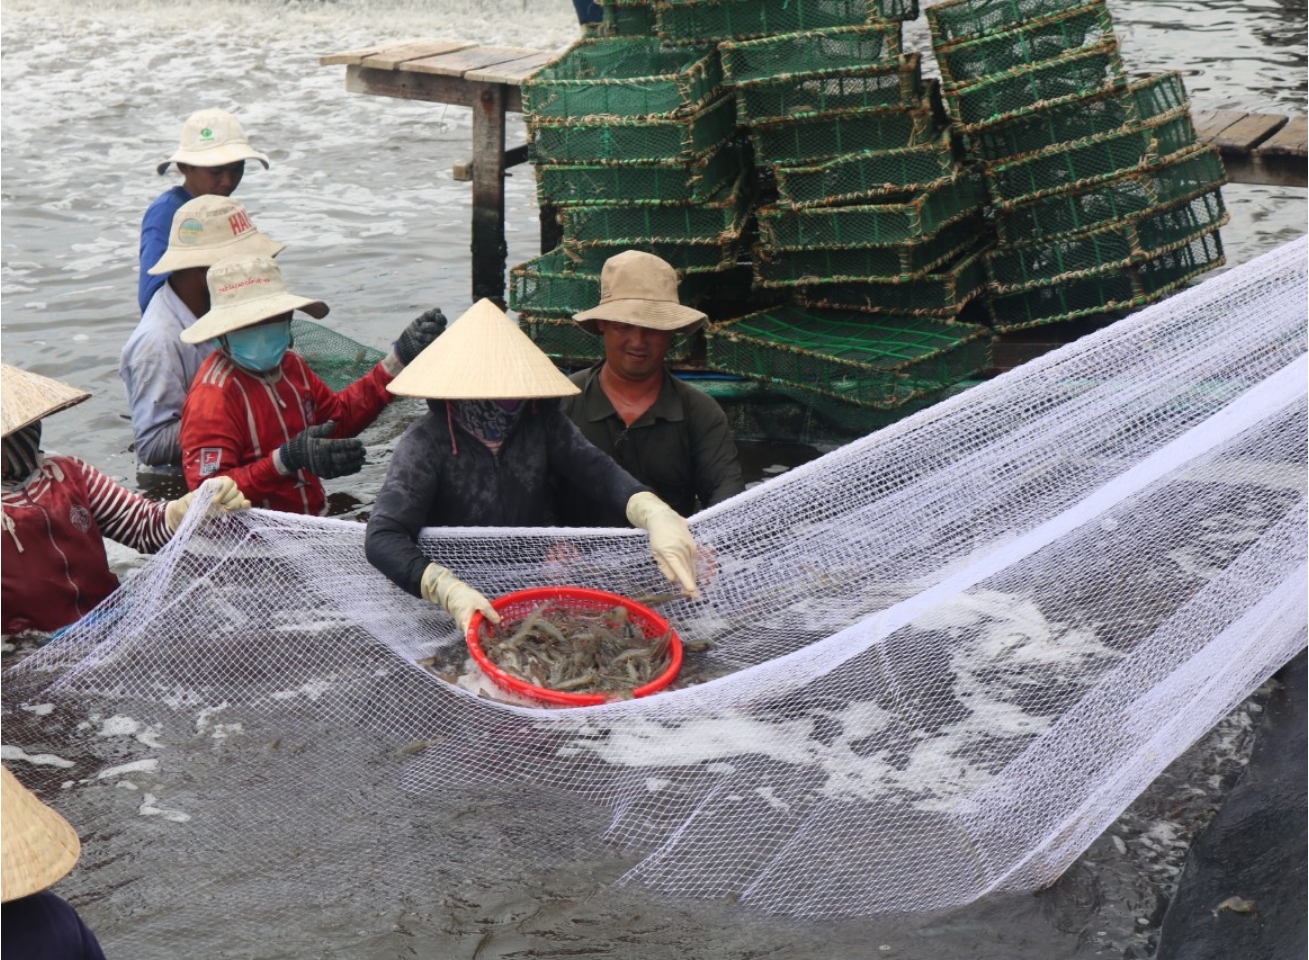 Thông báo tạm ngừng đánh cá của Trung Quốc trên vùng biển Việt Nam không có giá trị